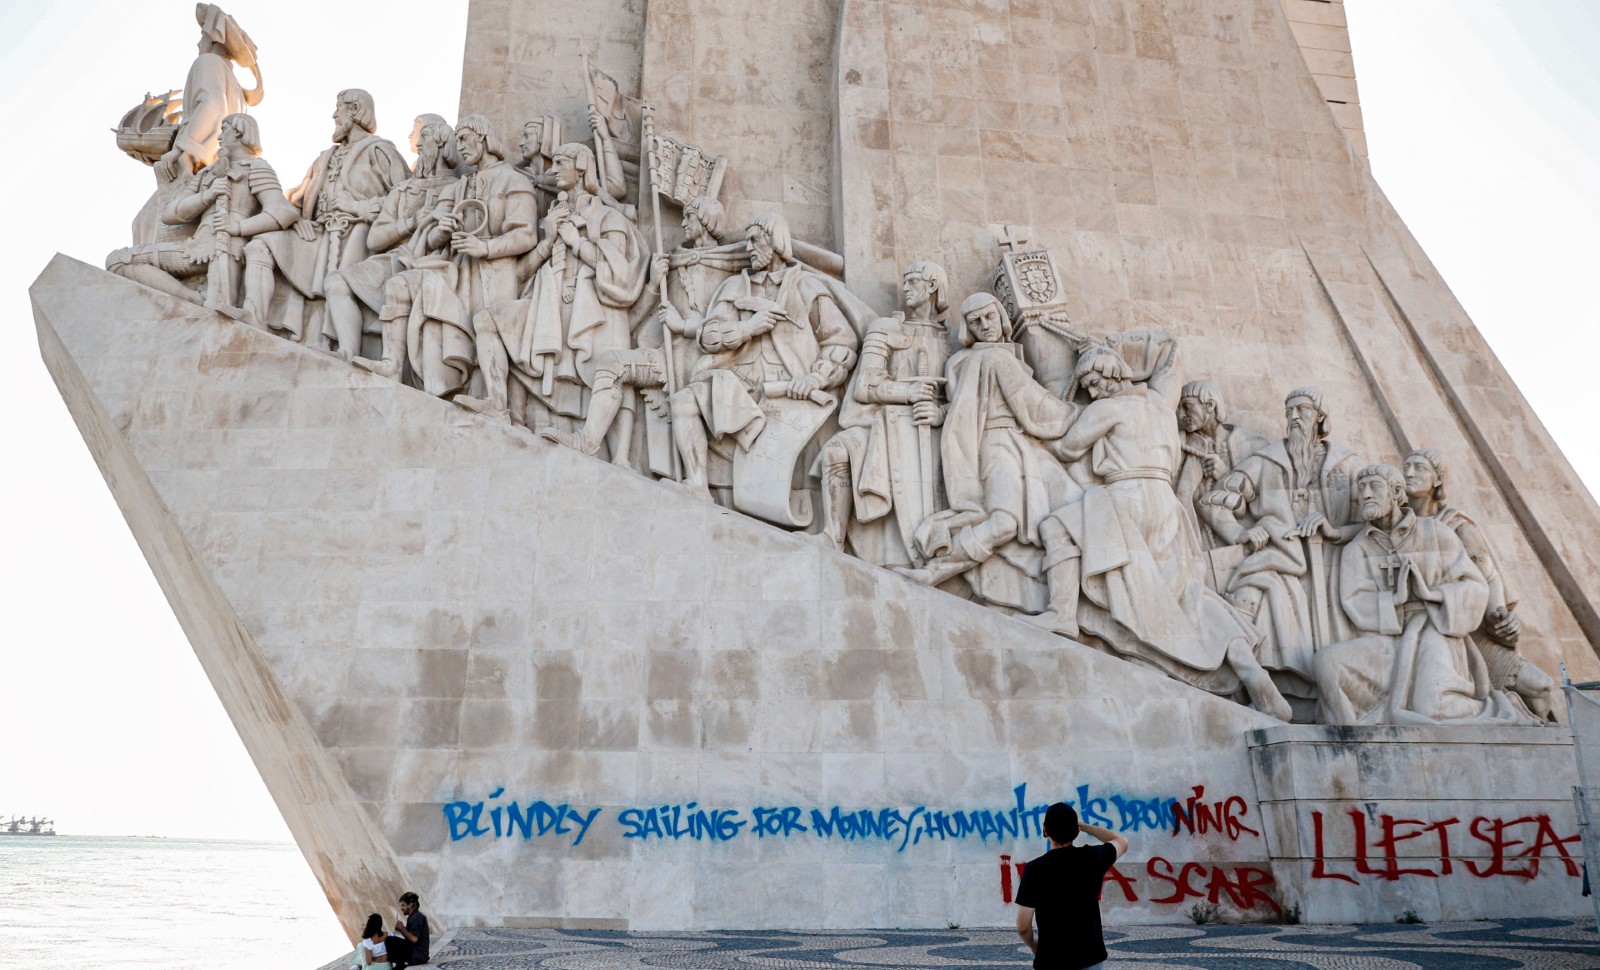 Tag au Portugal: la vandale française risque la prison